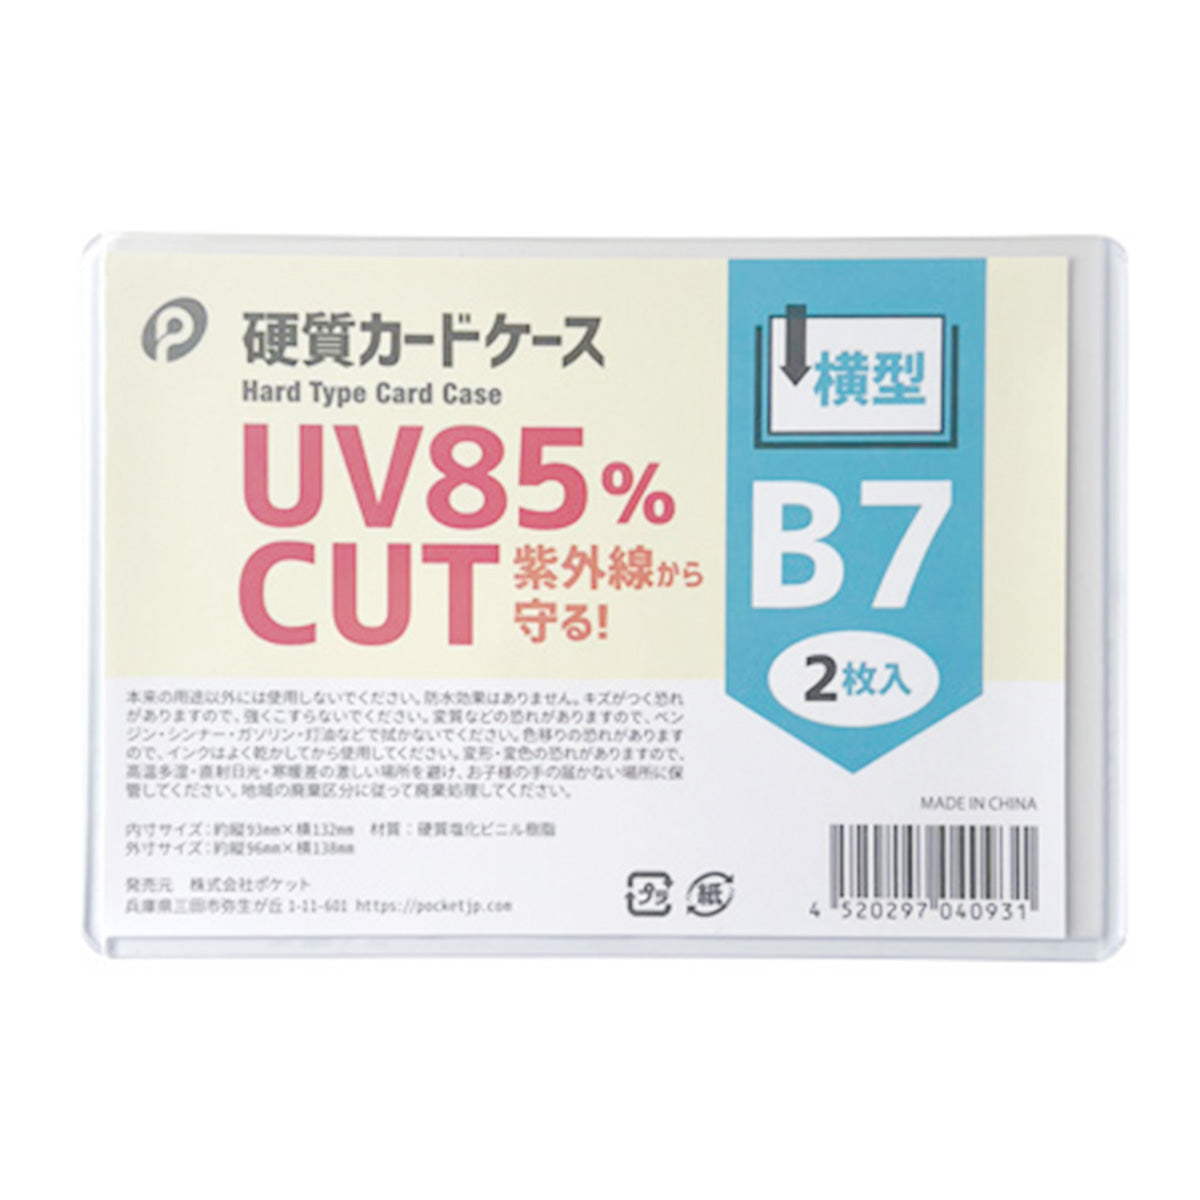 UVカット硬質カードケース横型B7/2枚入  352127